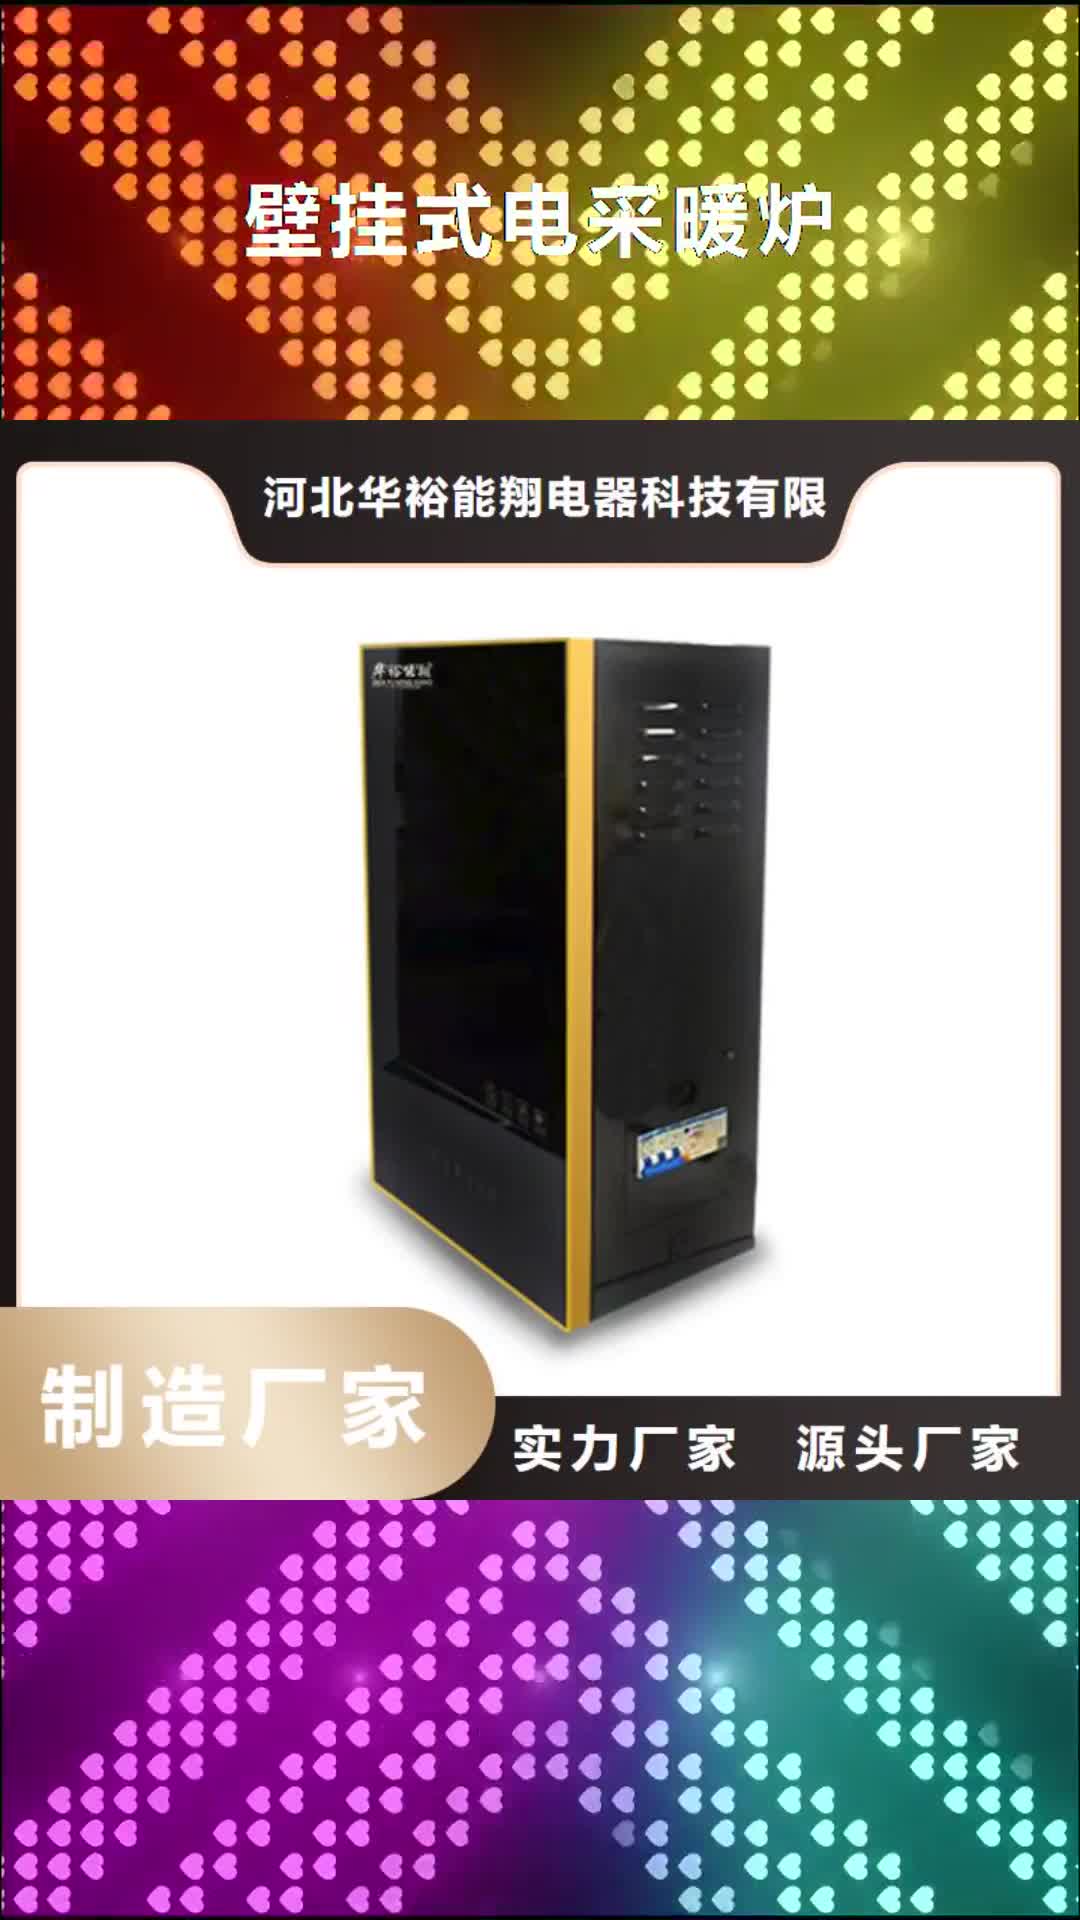 九江【壁挂式电采暖炉】,碳纤维电暖器应用领域